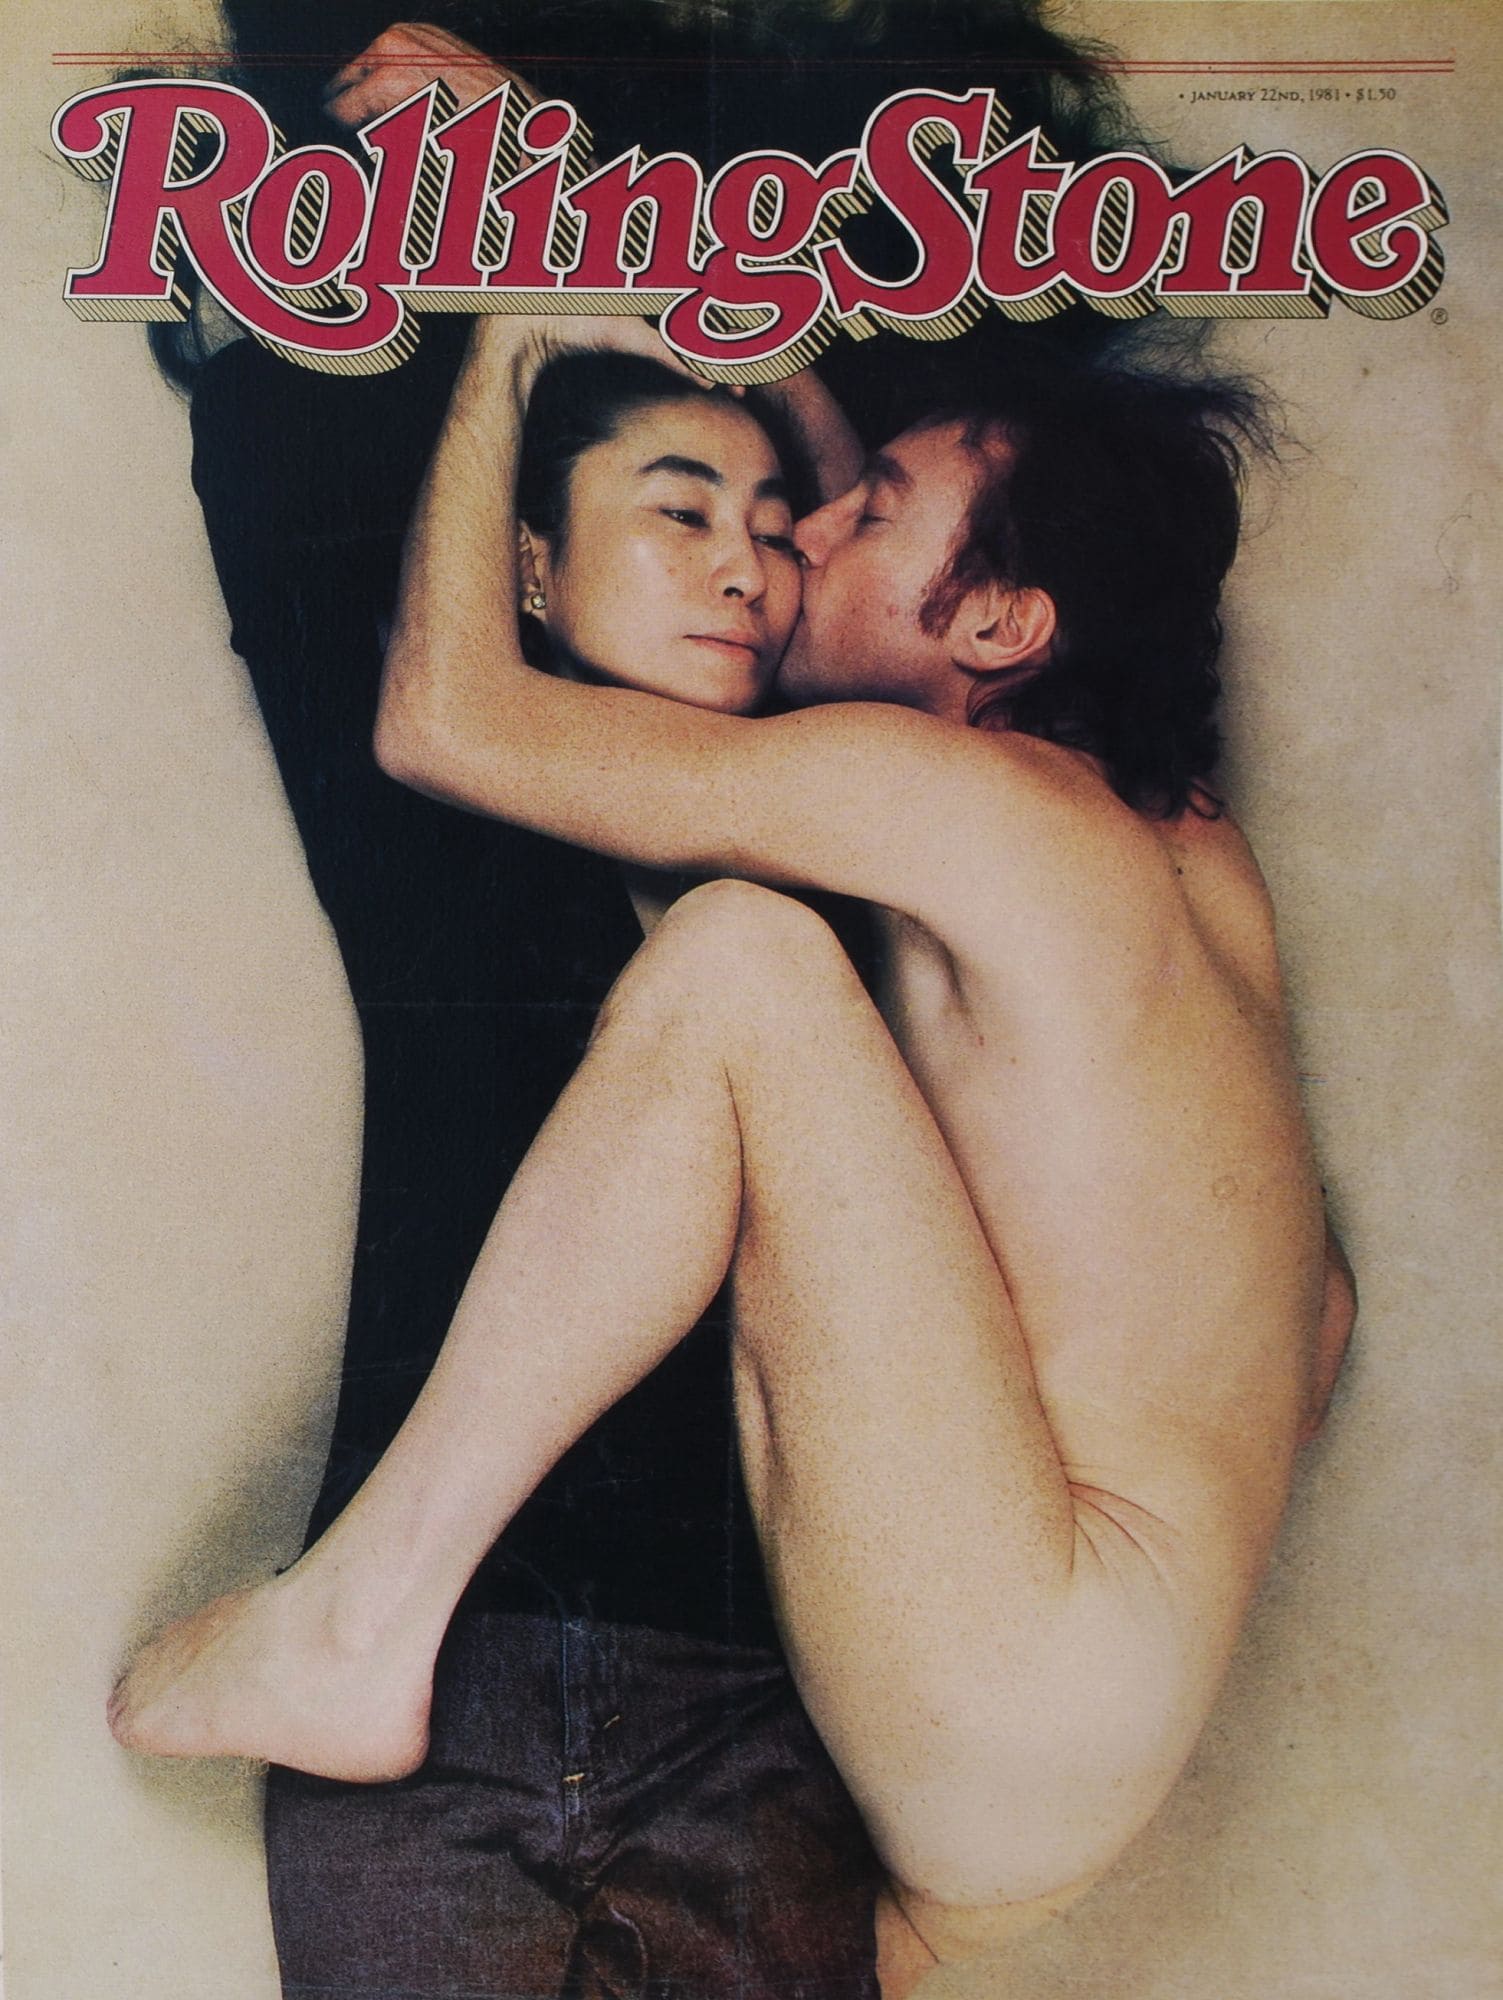 שער ה&quot;רולינג סטון&quot; המפורסם עם ג&#039;ון לנון ויוקו אונו, שצילמה אנני ליבוביץ&#039; בבוקר ה-8 בדצמבר 1980, שעות ספורות לפני שלנון נרצח